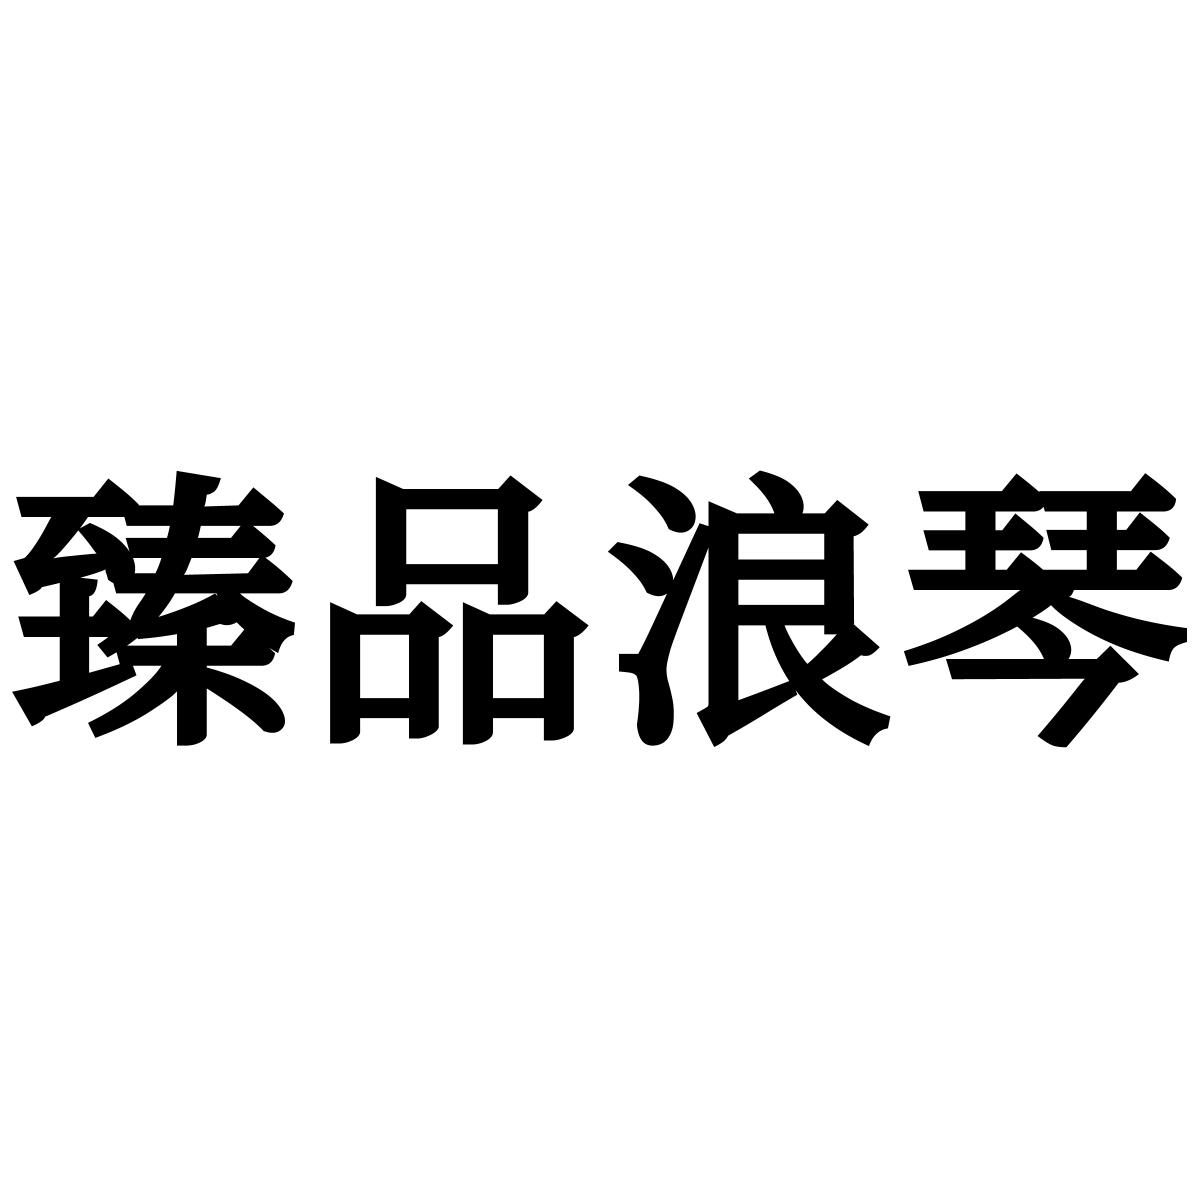 臻品浪琴logo